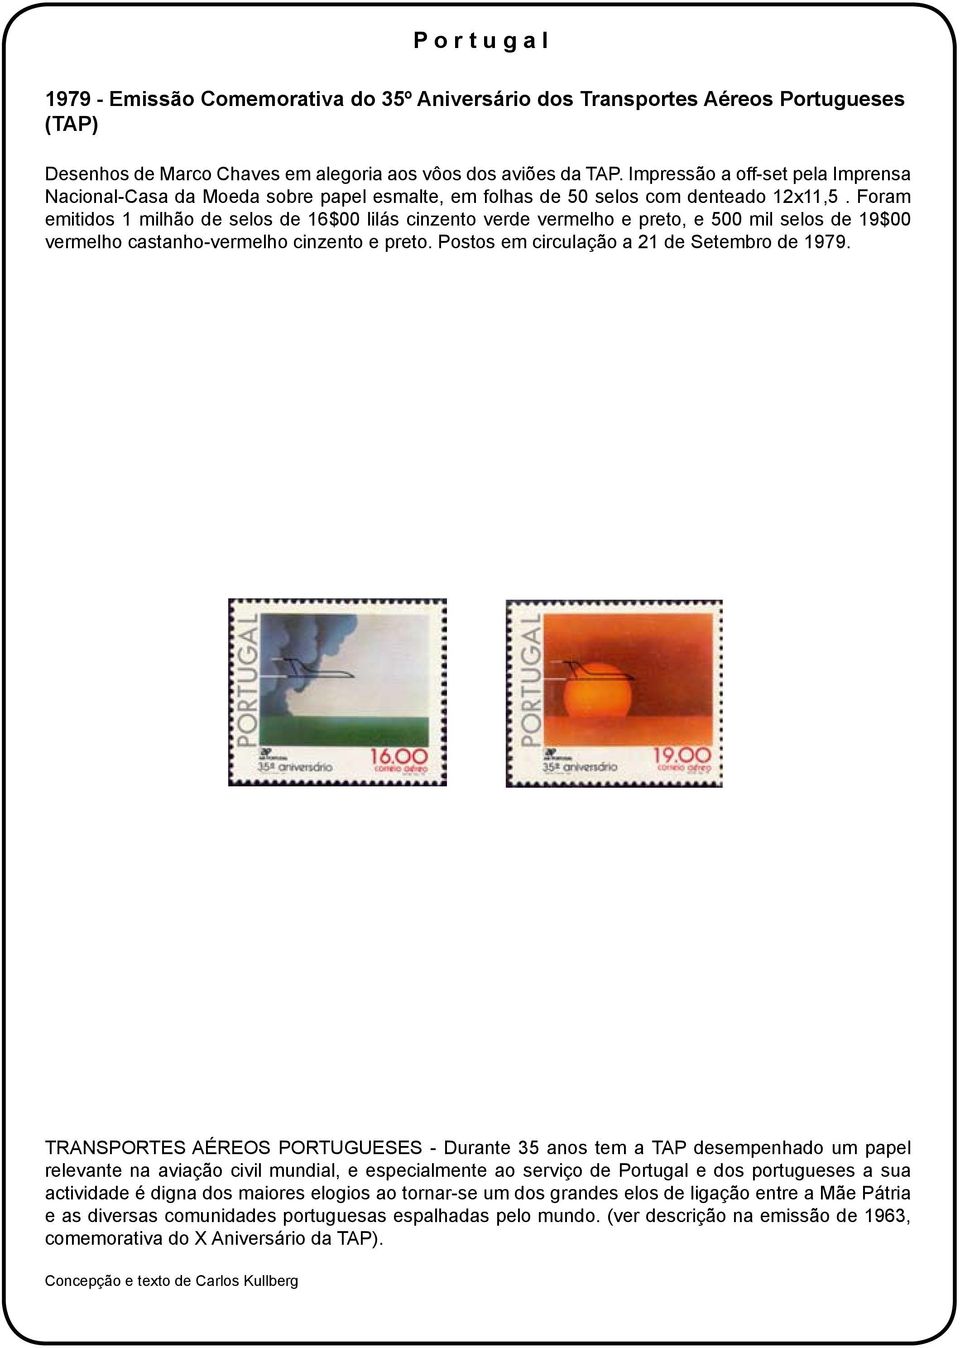 Foram emitidos 1 milhão de selos de 16$00 lilás cinzento verde vermelho e preto, e 500 mil selos de 19$00 vermelho castanho-vermelho cinzento e preto. Postos em circulação a 21 de Setembro de 1979.